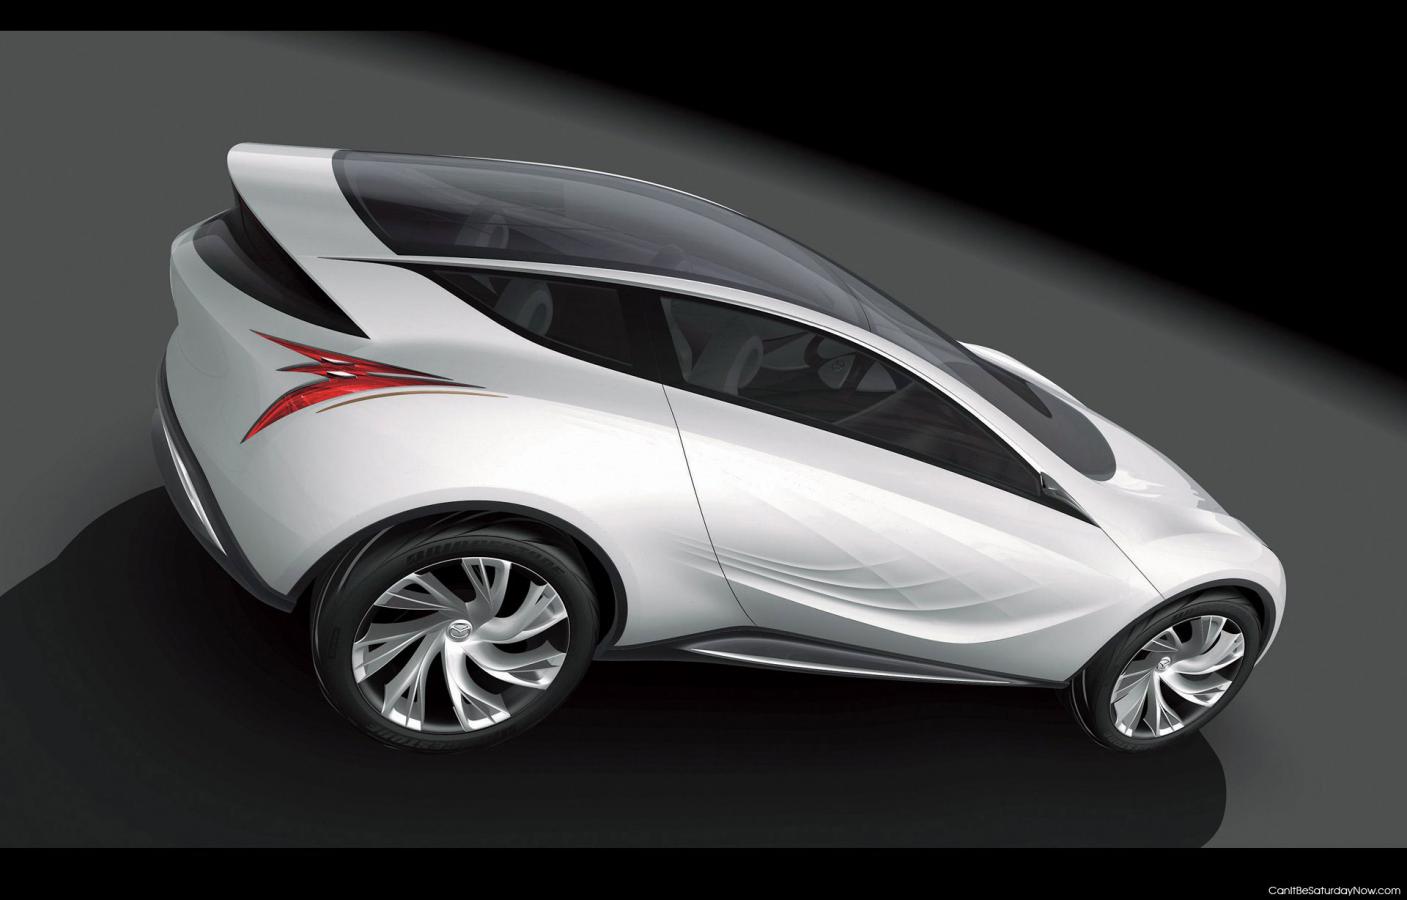 Sleek car - sleek looking concept car